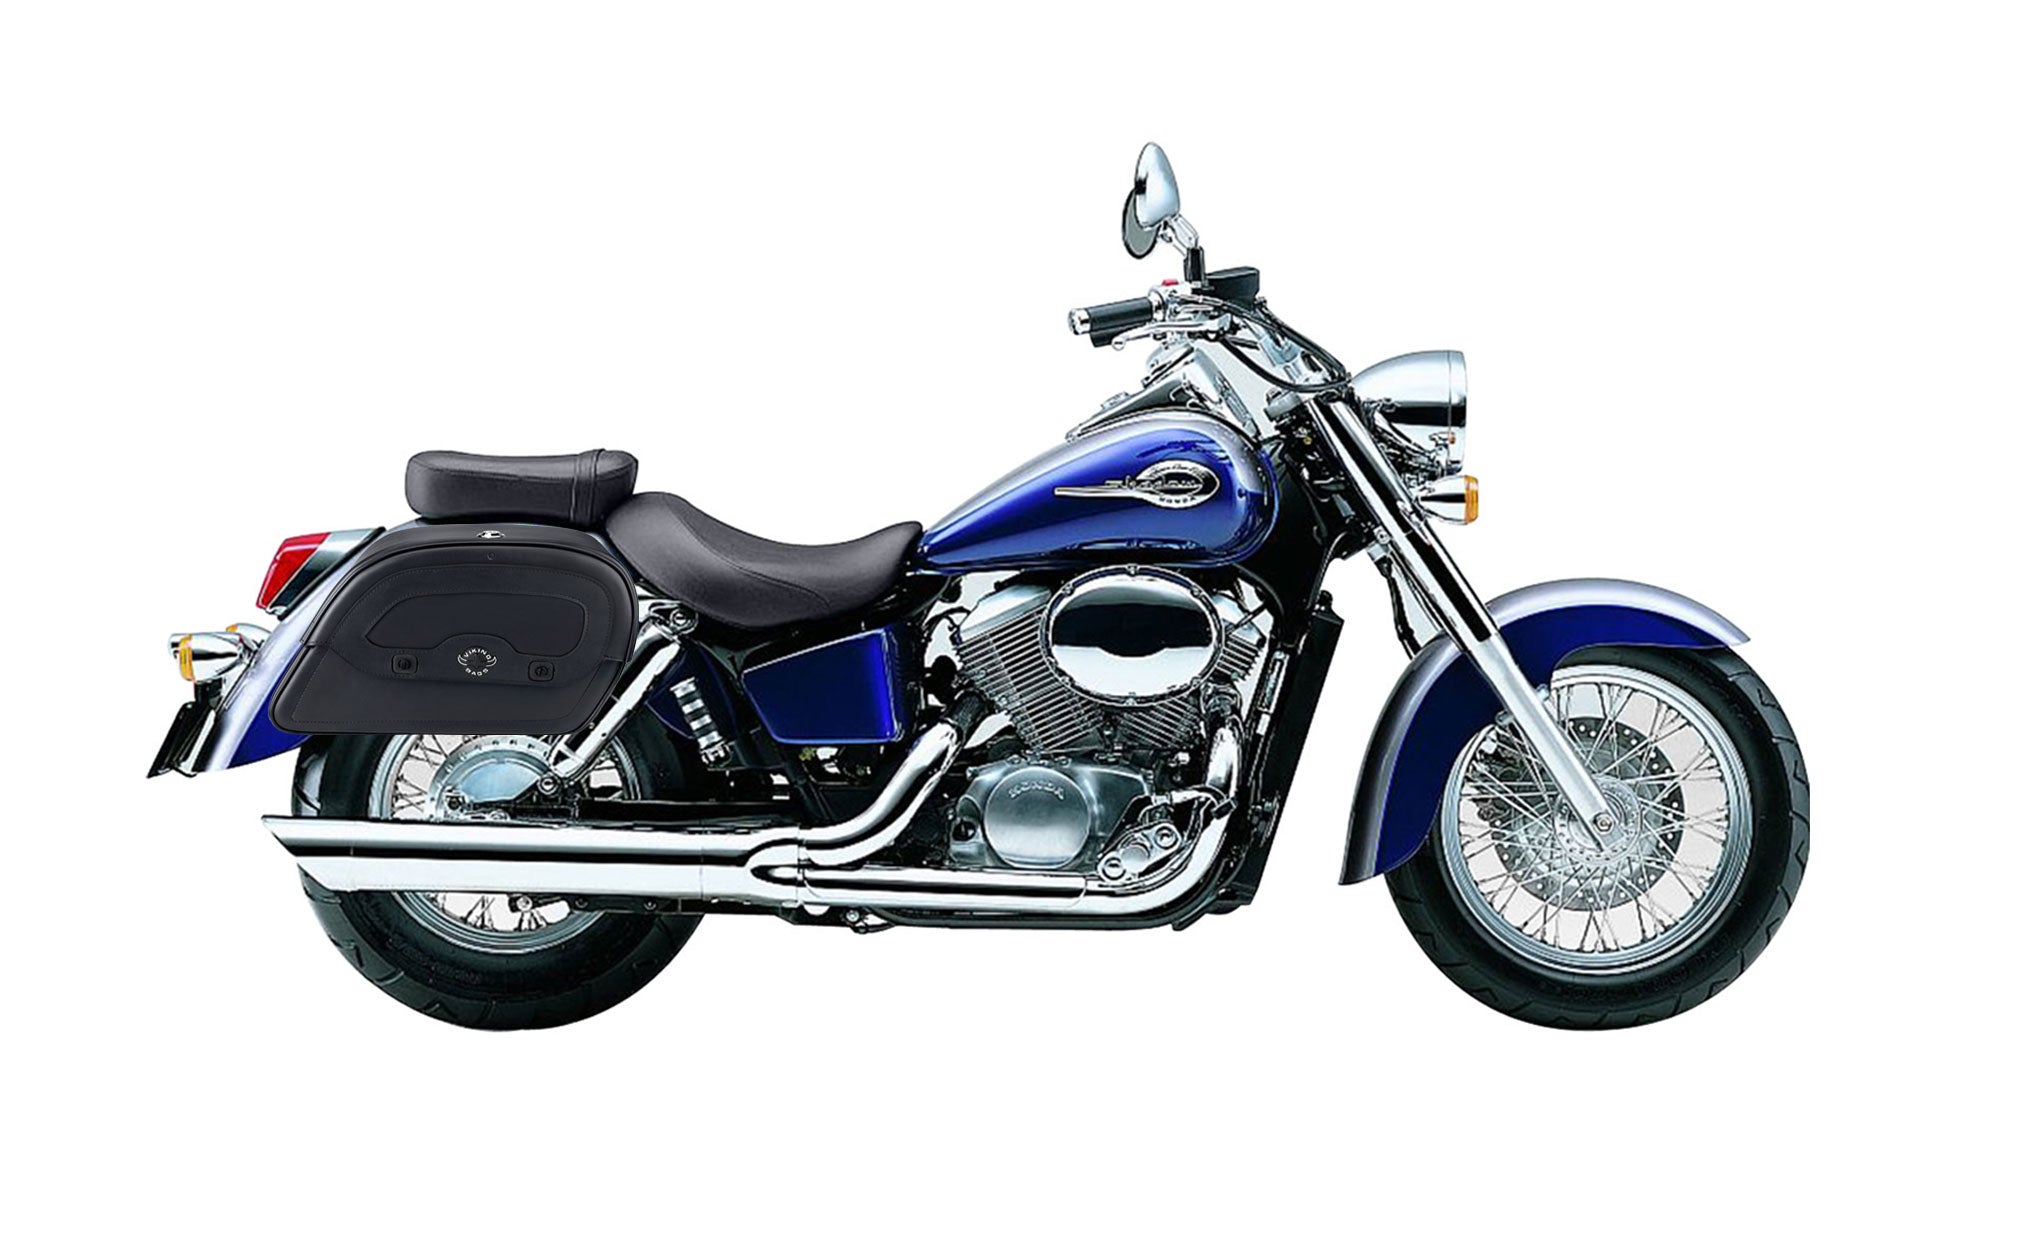 Viking Warrior Medium Honda Shadow 750 Ace Leather Motorcycle Saddlebags on Bike Photo @expand